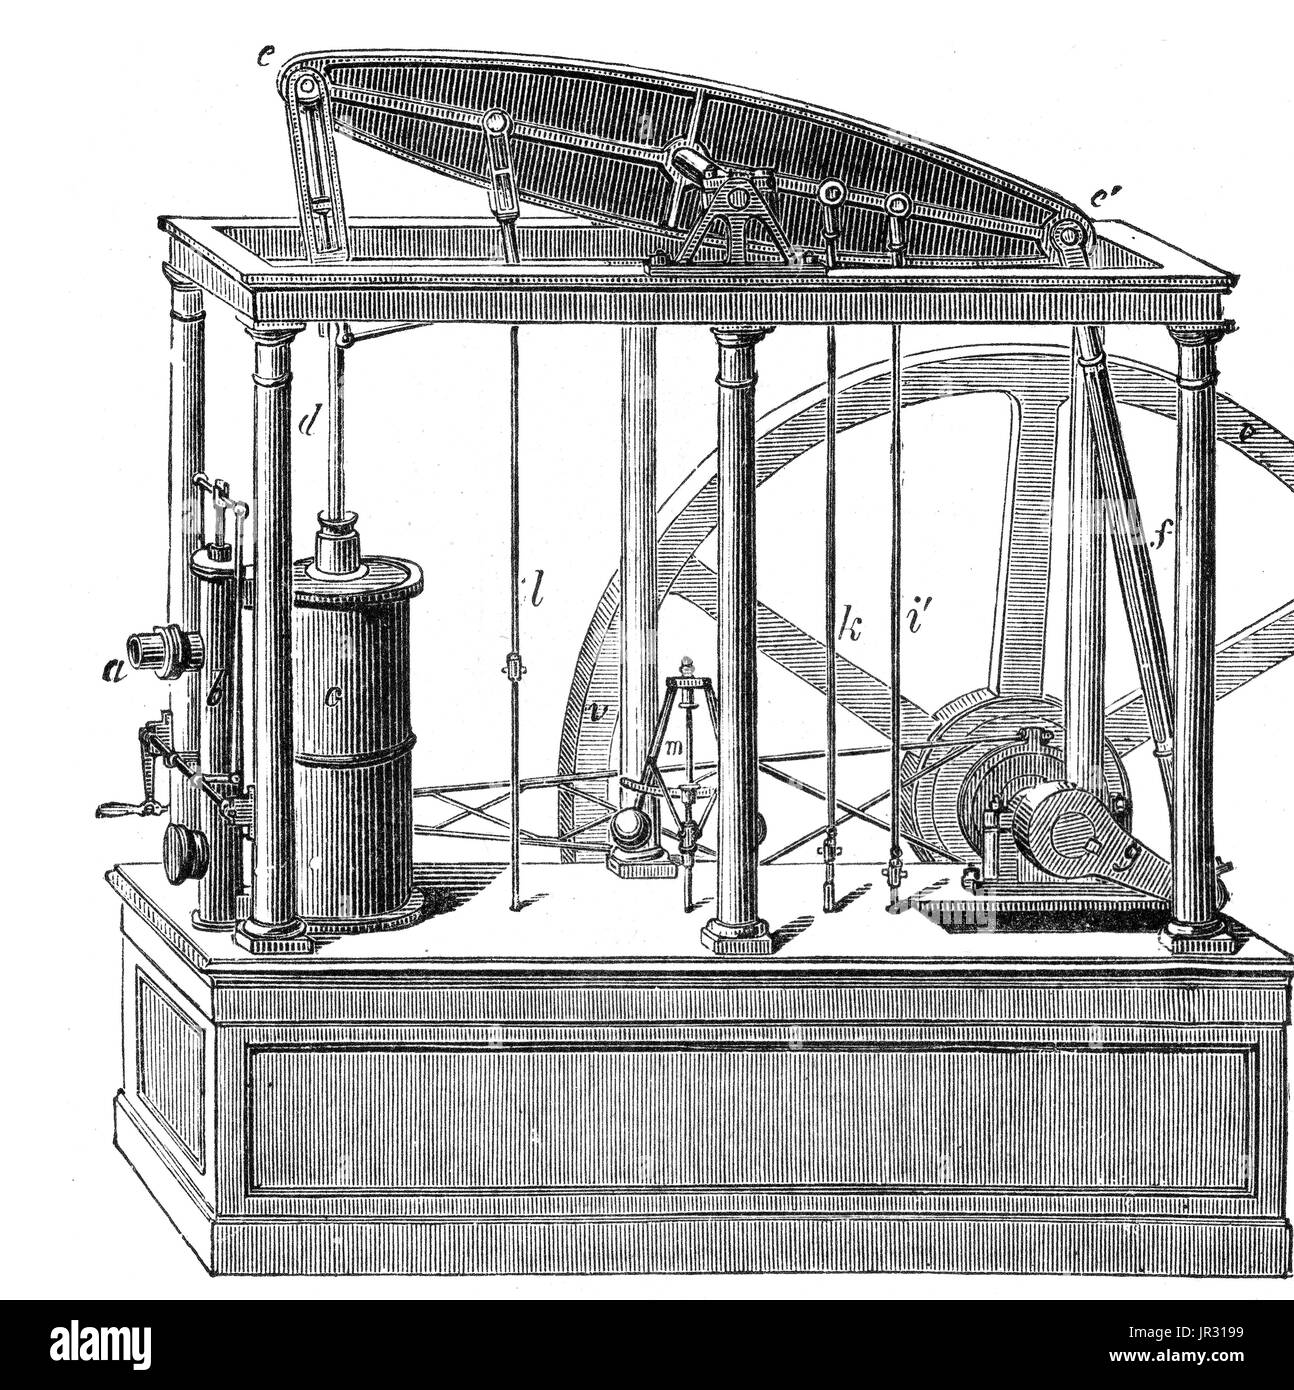 Le Watts machine à vapeur était le premier type de machine à vapeur à faire usage de la vapeur à une pression atmosphérique juste au-dessus de conduire le piston avec l'aide d'un vide partiel. L'amélioration de la conception du moteur, le 1712 Newcomen Watts moteur à vapeur, développé de façon sporadique à partir de 1763 à 1775, était la prochaine grande étape dans le développement de la machine à vapeur. Offrant une augmentation spectaculaire de l'efficacité du carburant, la nouvelle conception a remplacé les moteurs de Newcomen dans les régions où le charbon était cher, pour ensuite être utilisé à la place de la plupart des sources d'énergie naturelles telles que le vent et l'eau. James Watt's est devenu synonyme de design Banque D'Images